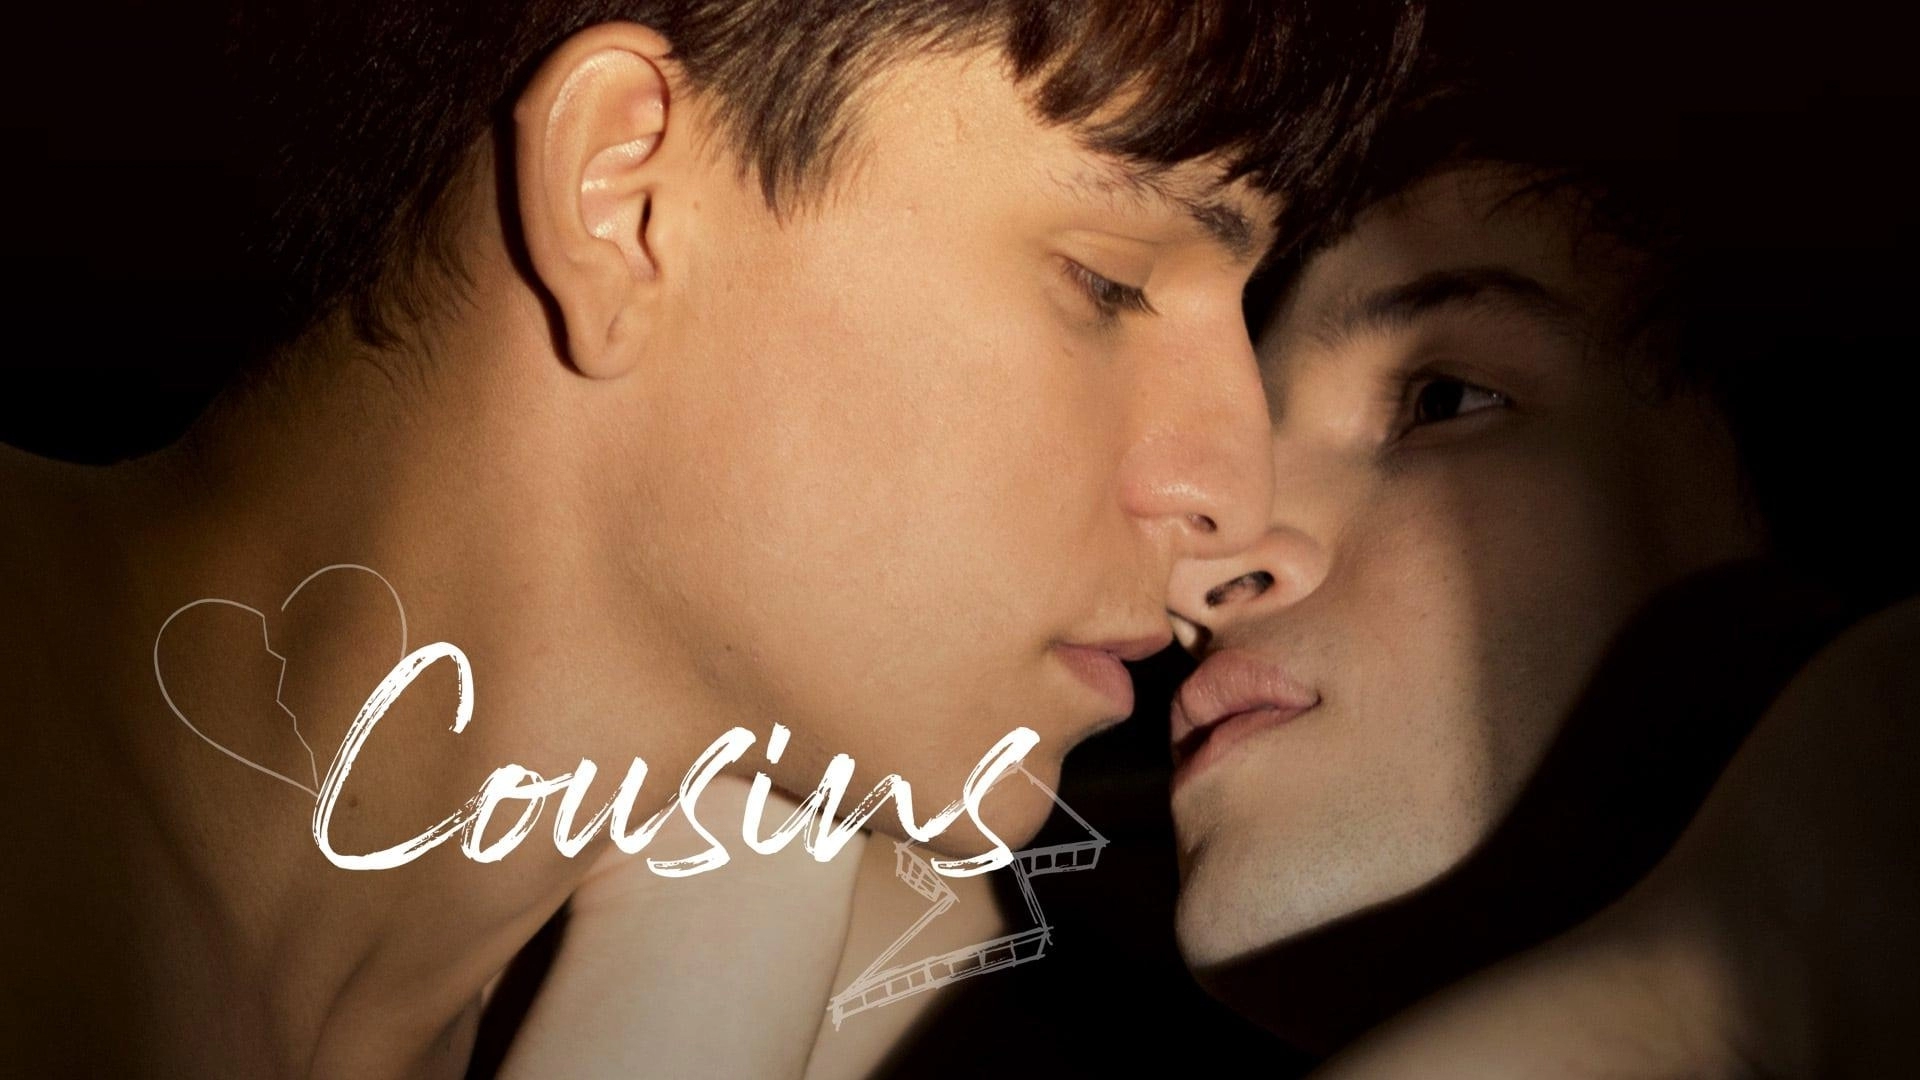 دانلود فیلم Cousins 2019 با زیرنویس فارسی